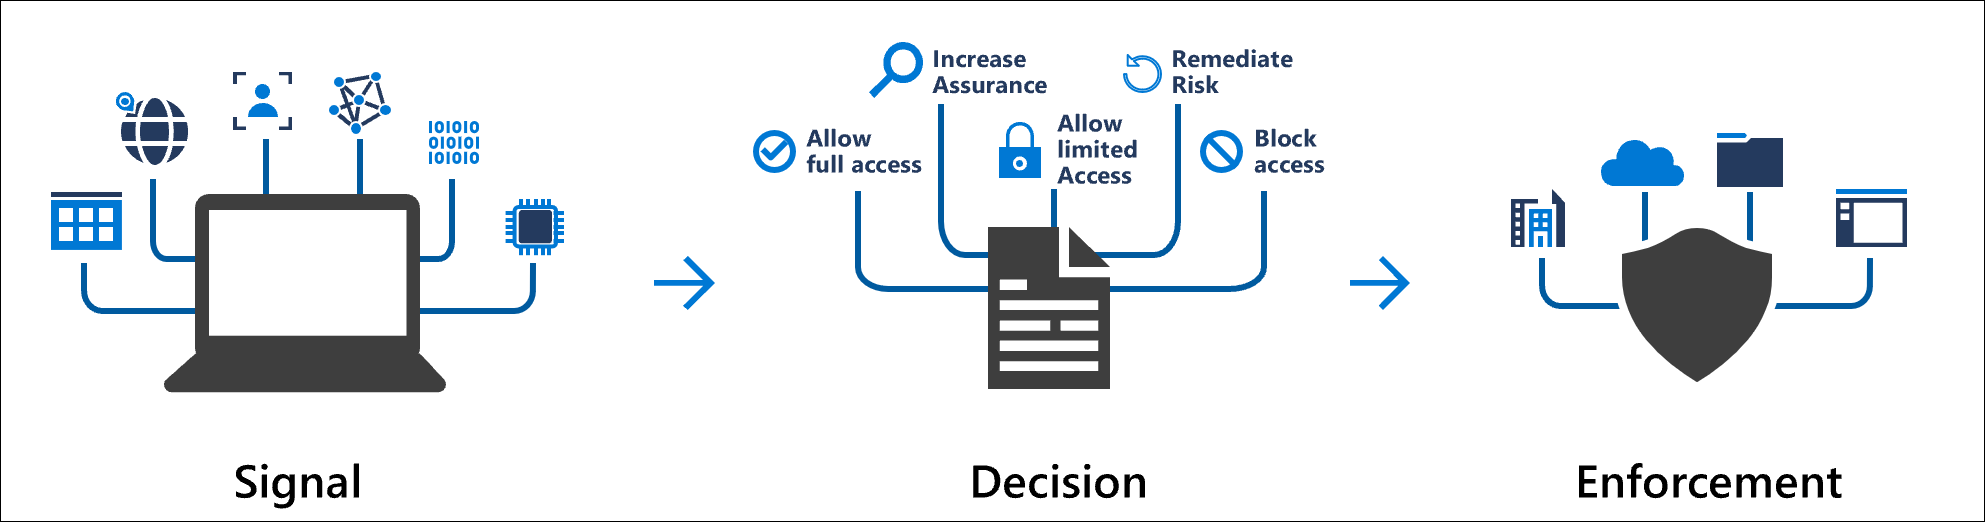 Diagramme montrant le concept de signaux d’accès conditionnel et la décision d’appliquer une directive organisationnelle.